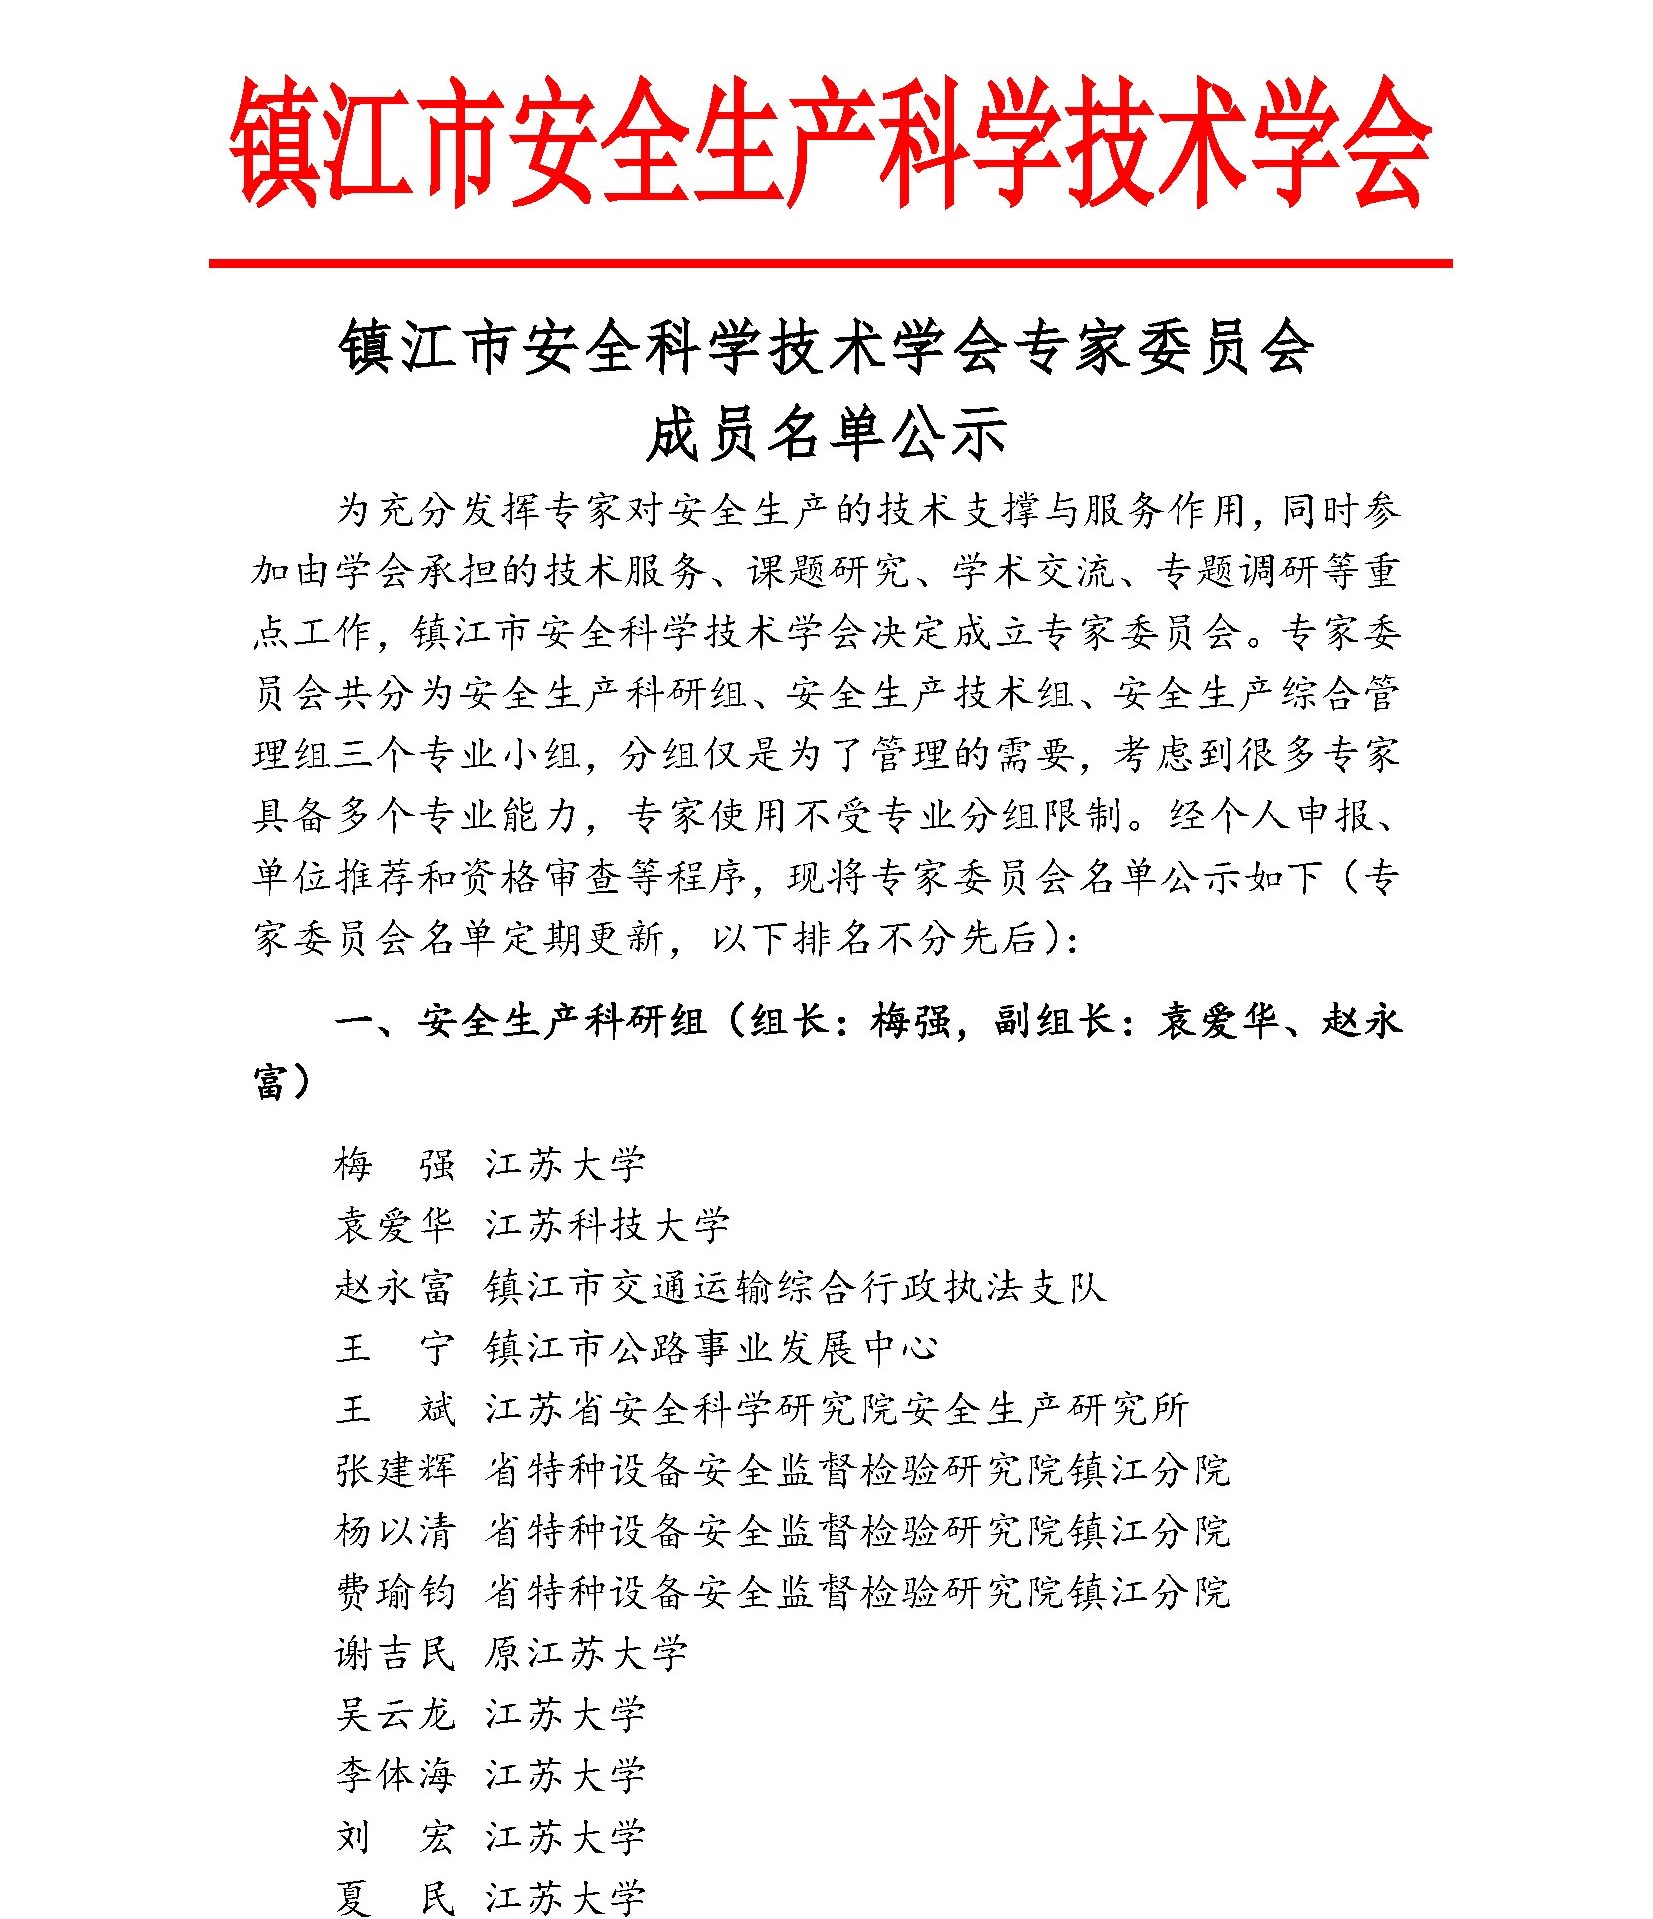 镇江市安全生产科学技术学会专家委员会成员名单公示(图2)